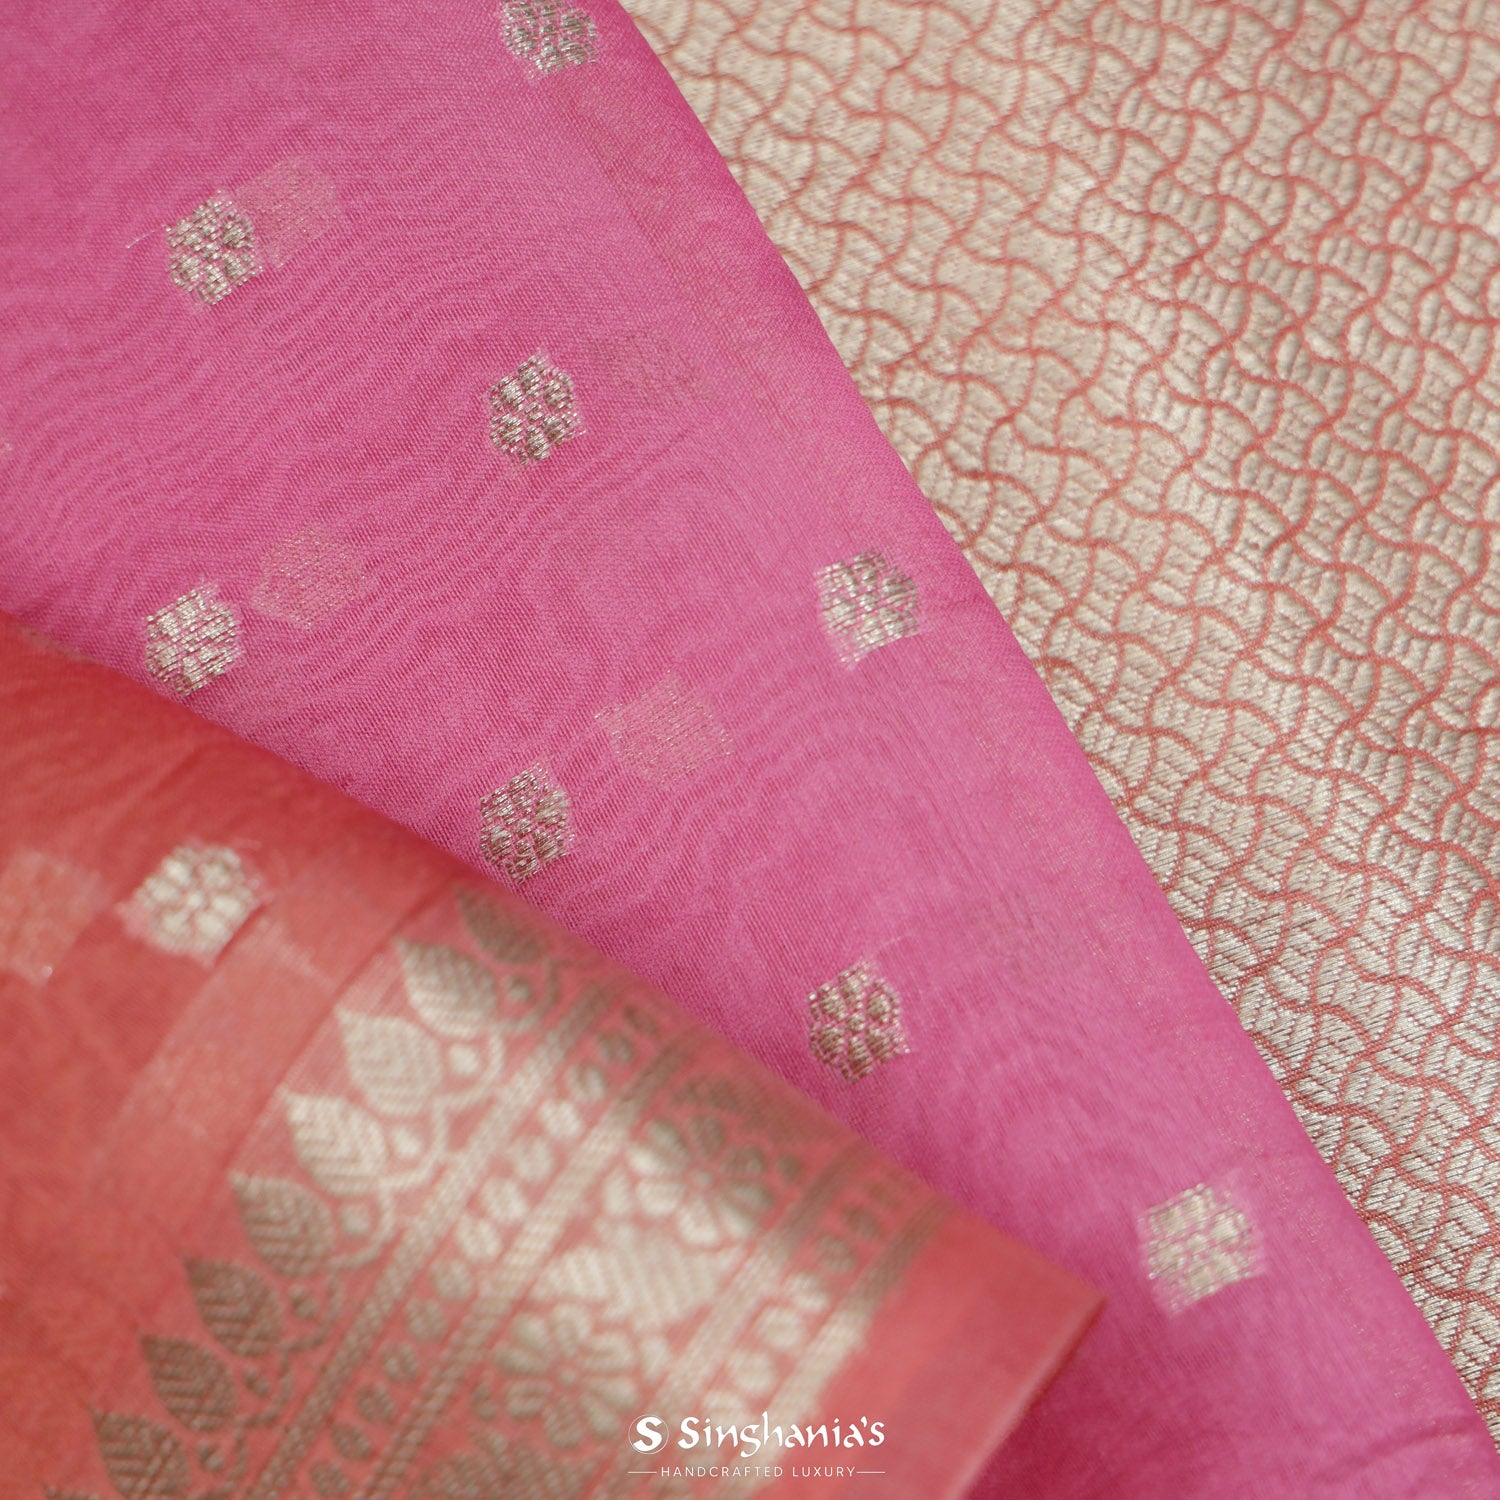 Multi-Pink Organza Saree With Banarasi Weaving In Floral Motifs